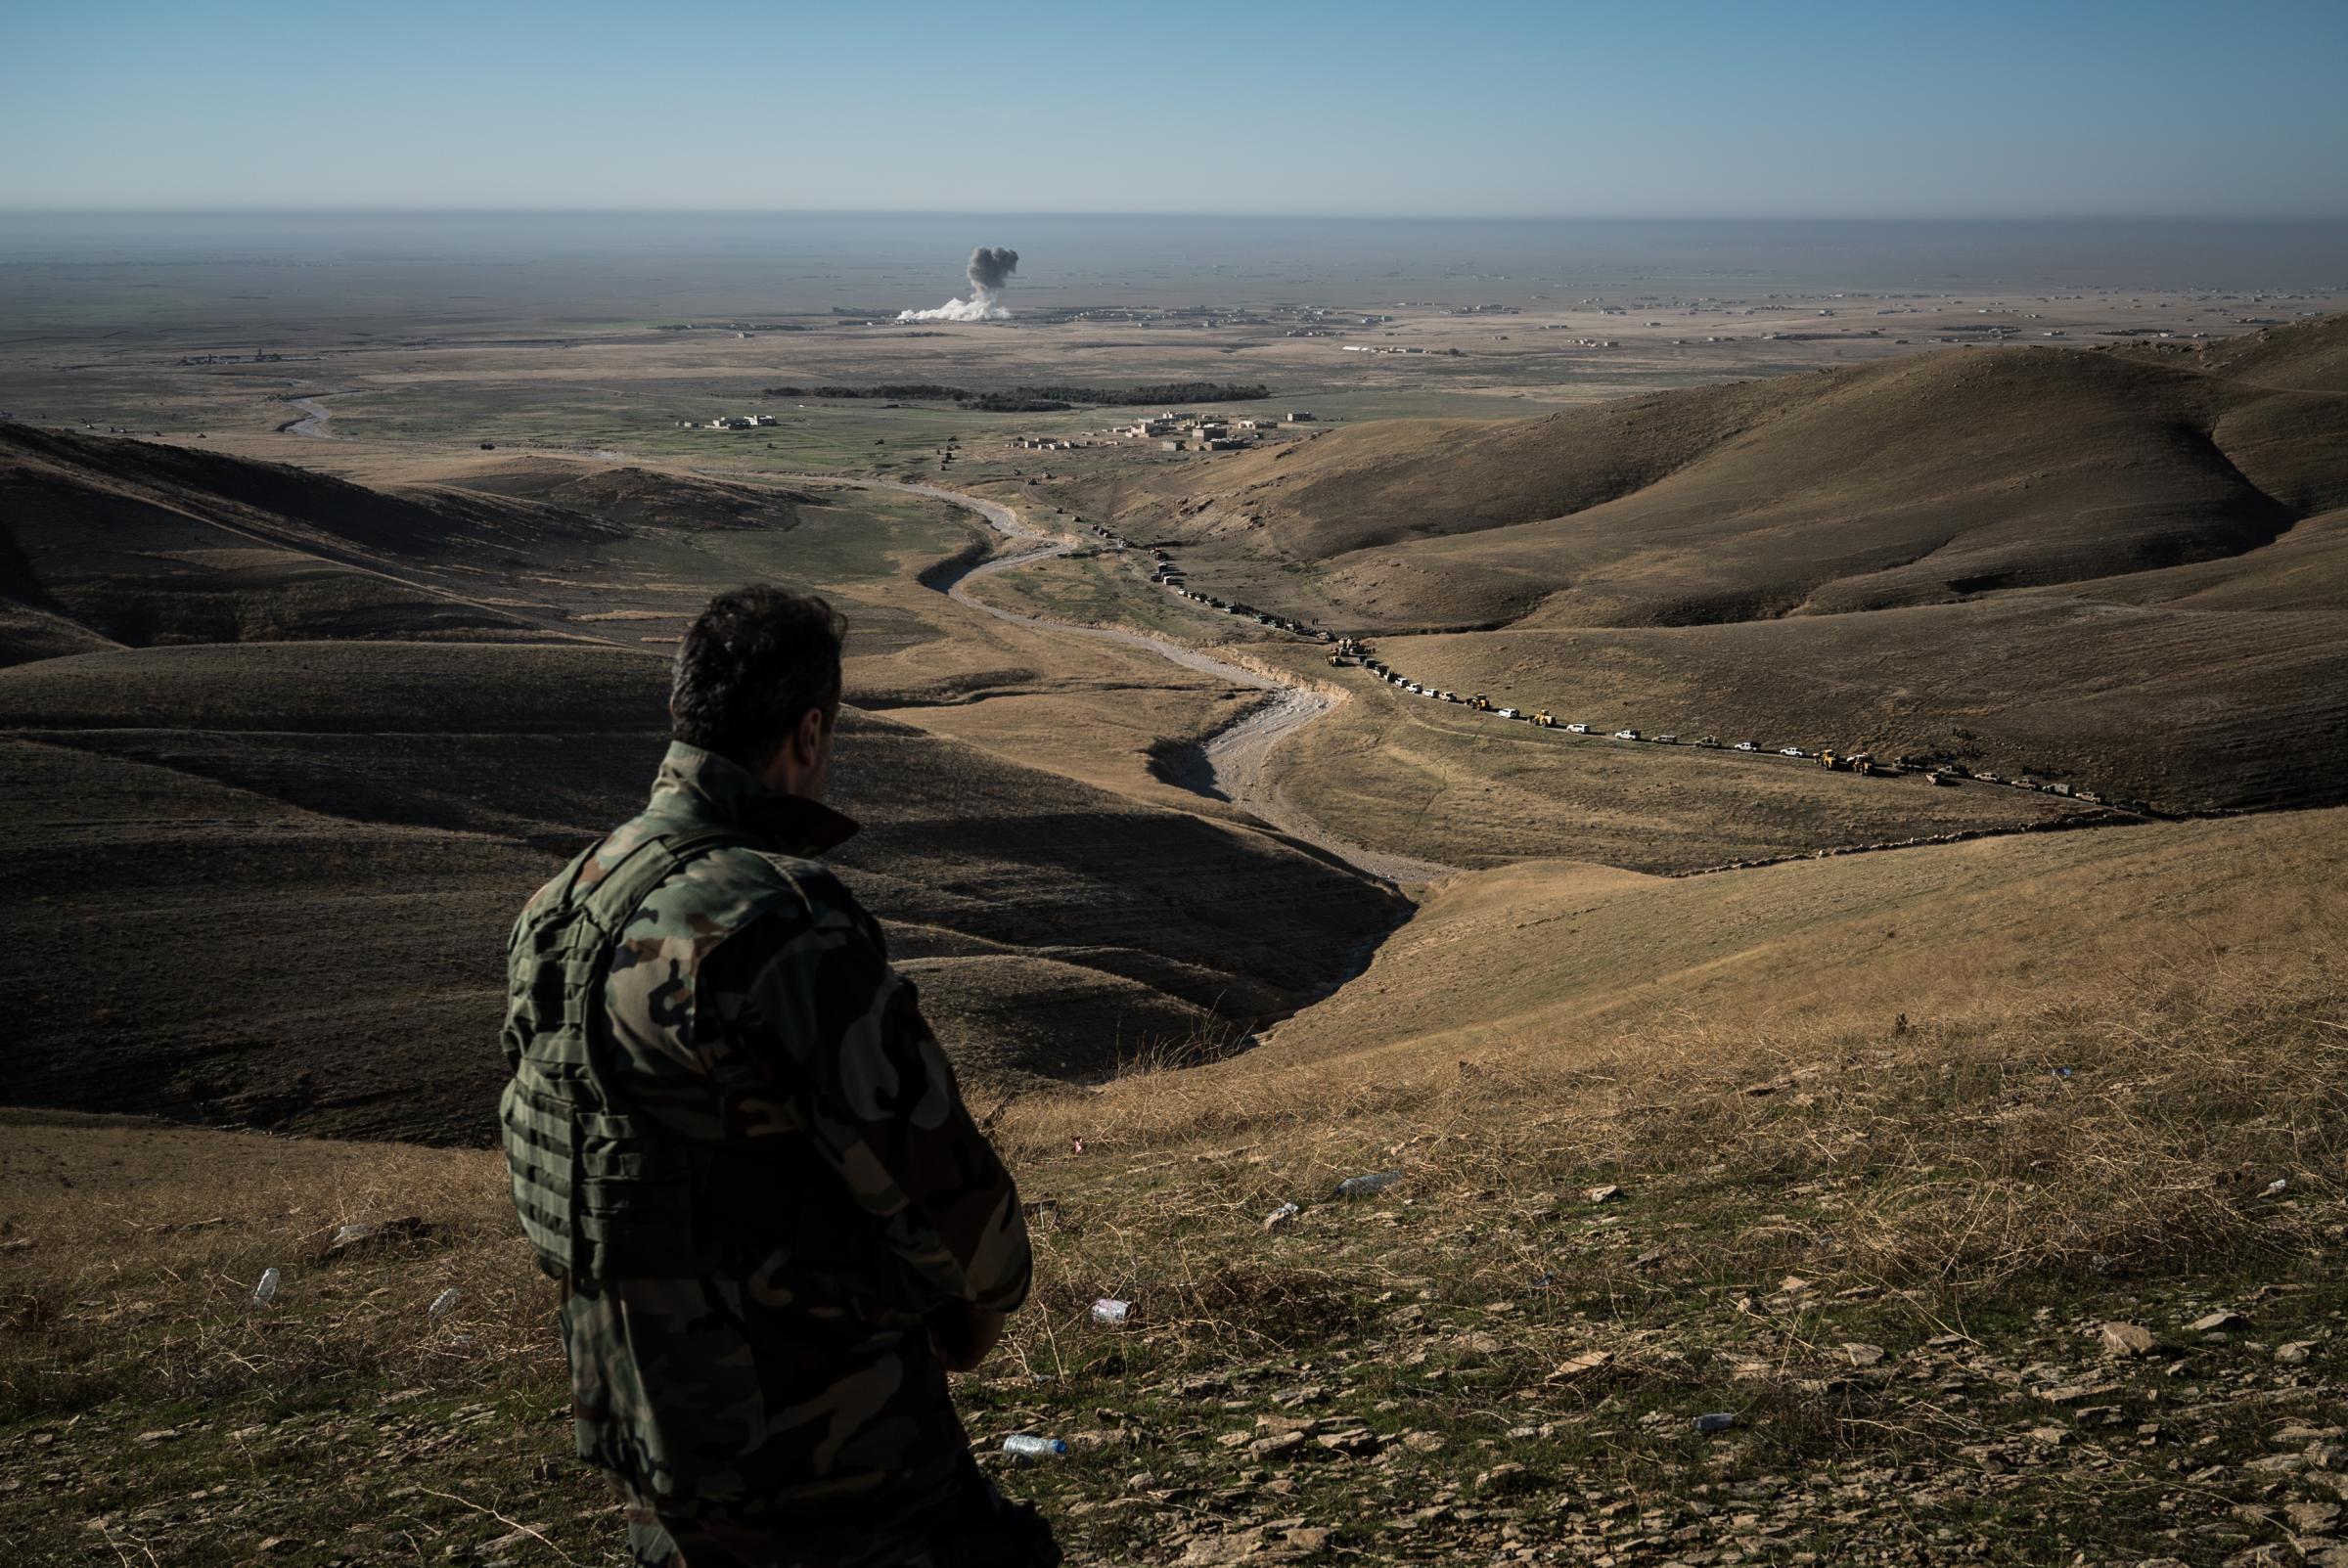 MT. SINJAR, NOVEMBER 12: A member of a Kurdish special forces r